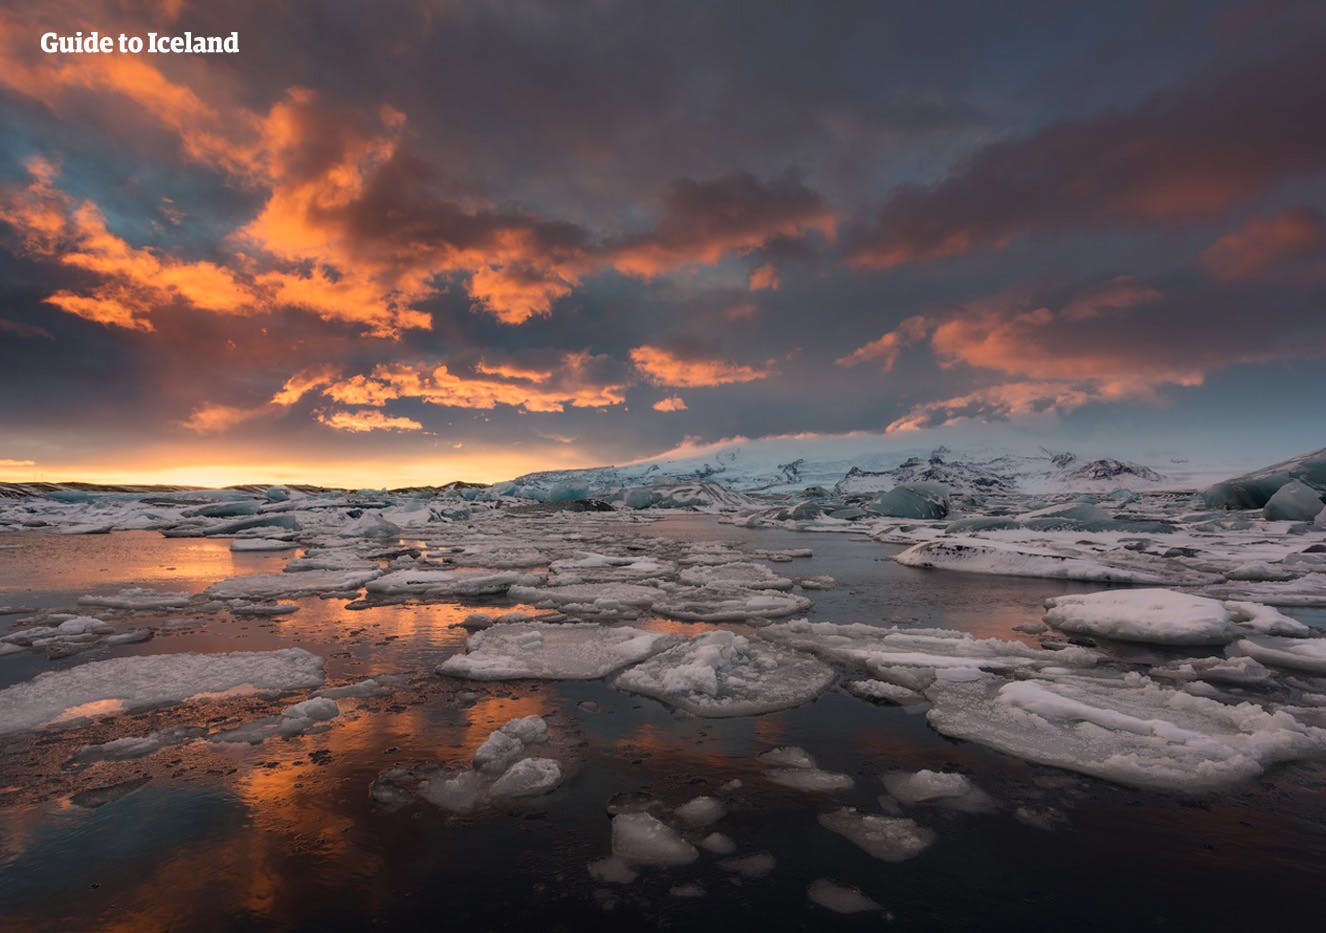 La laguna glaciale di Jökulsárlón è conosciuta come "il gioiello della corona d'Islanda".